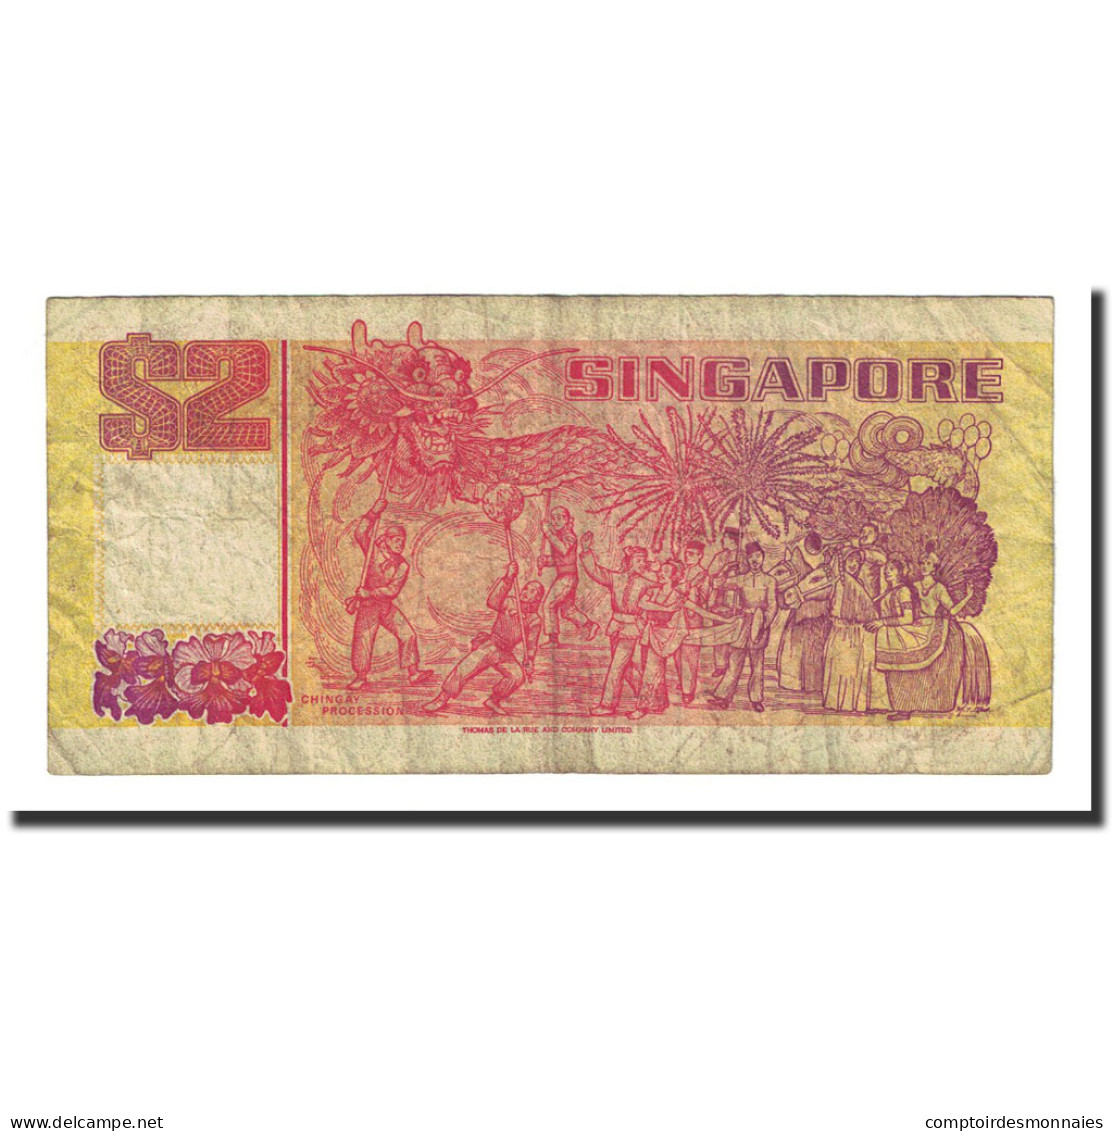 Billet, Singapour, 2 Dollars, Undated (1990), KM:27, TB - Singapur